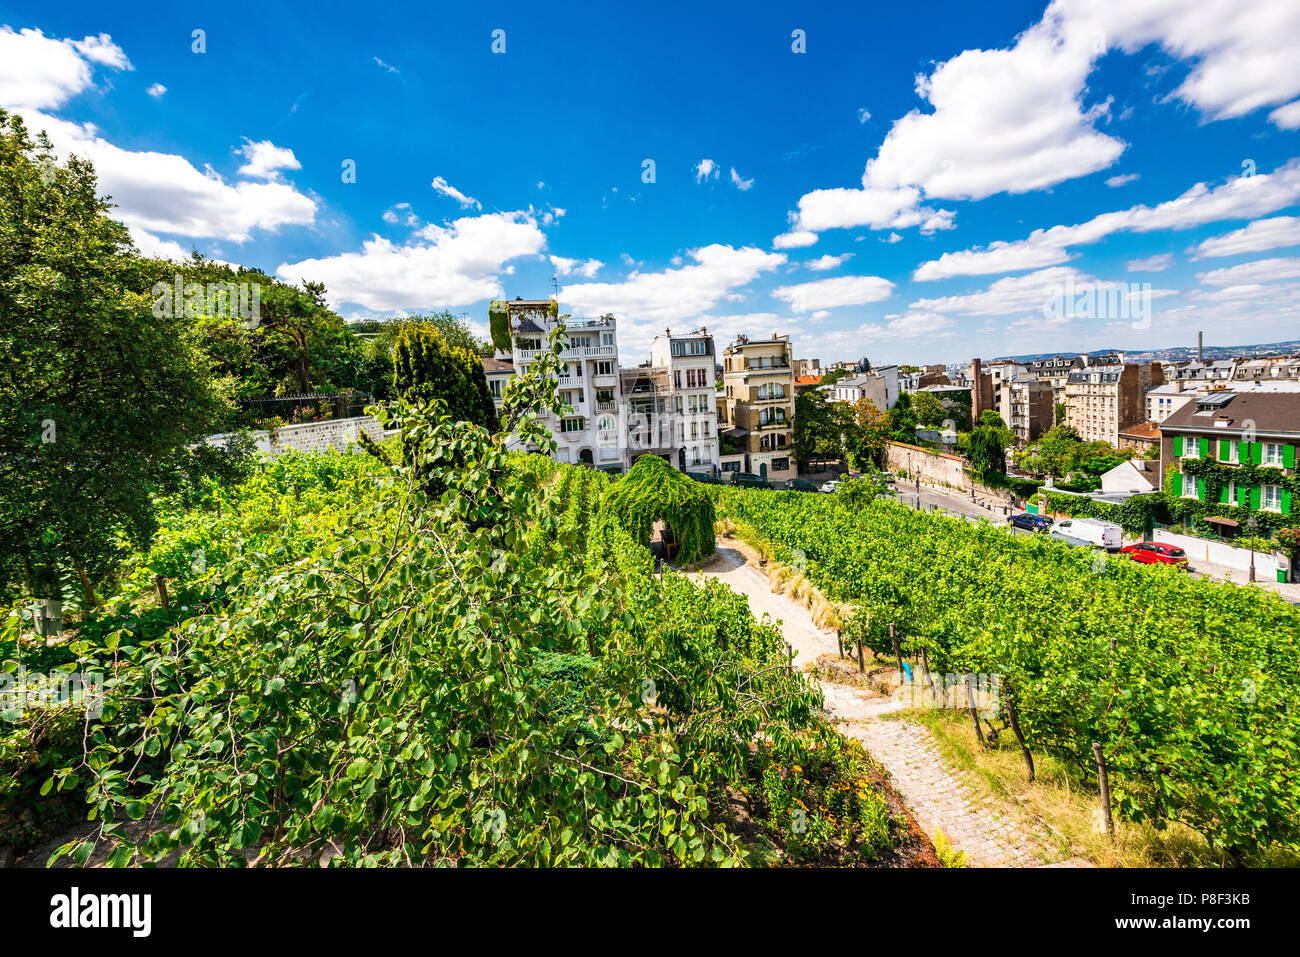 Clos Montmartre also known as Vigne de Montmartre. La Vigne de Montmartre is the oldest vineyard in Paris. Stock Photo